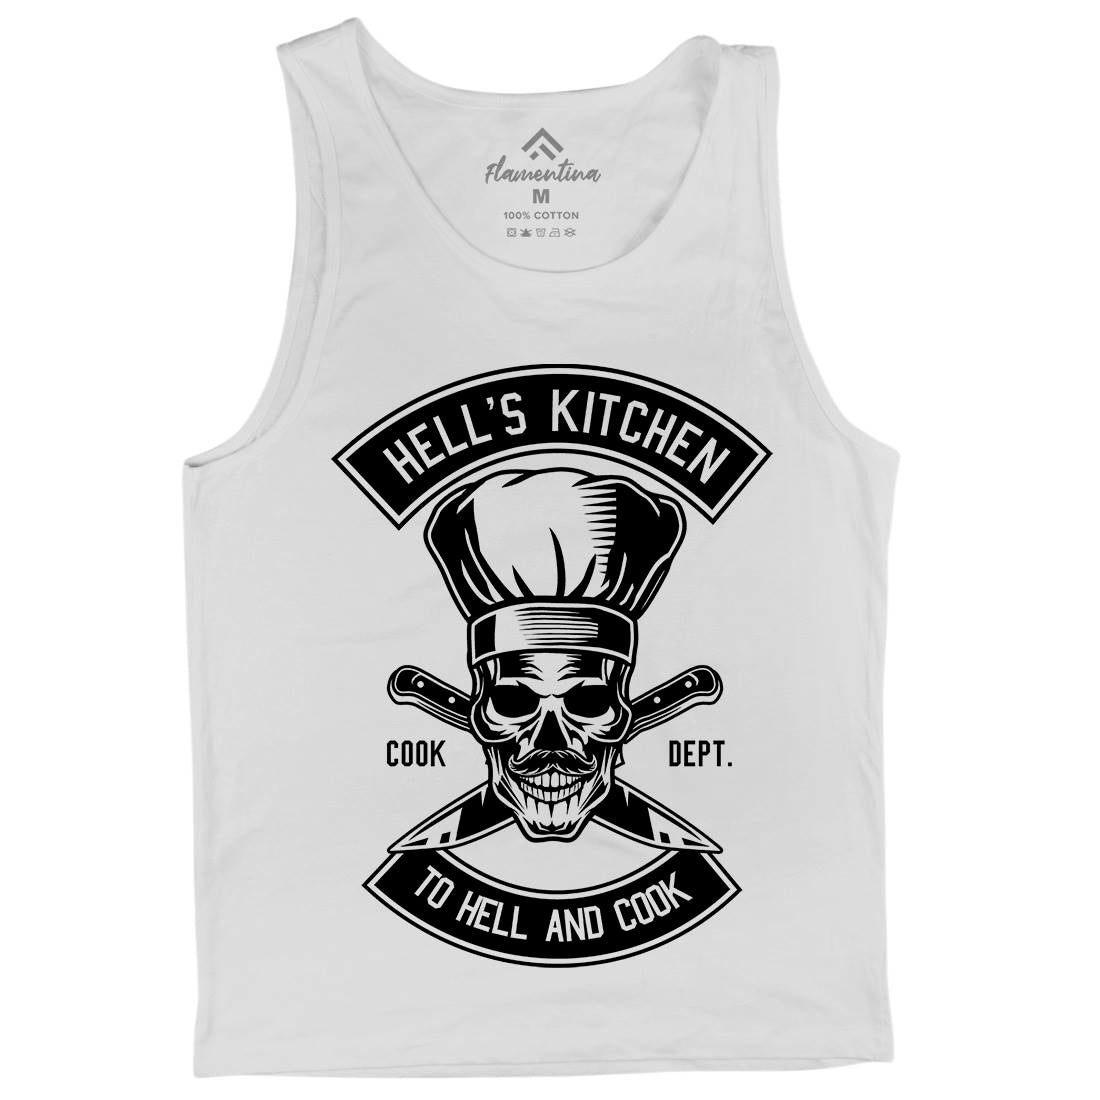 Kitchen Hell Mens Tank Top Vest Food B555